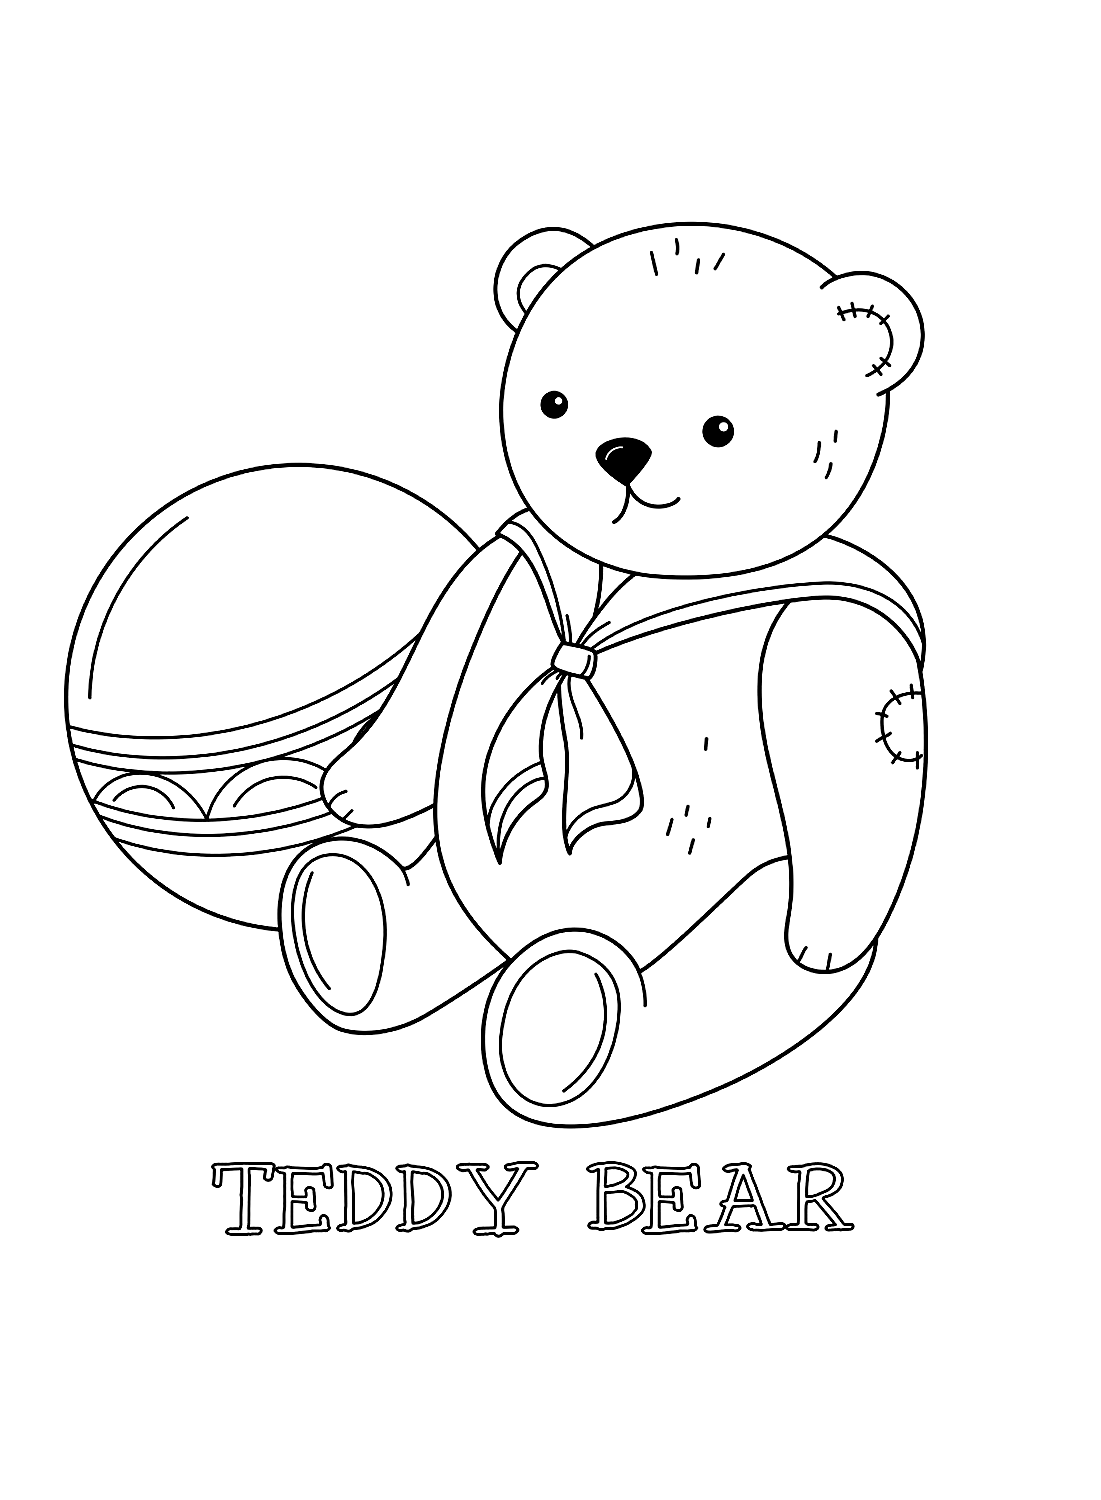 Immagini da colorare di palline e orsacchiotti di Teddy Bear